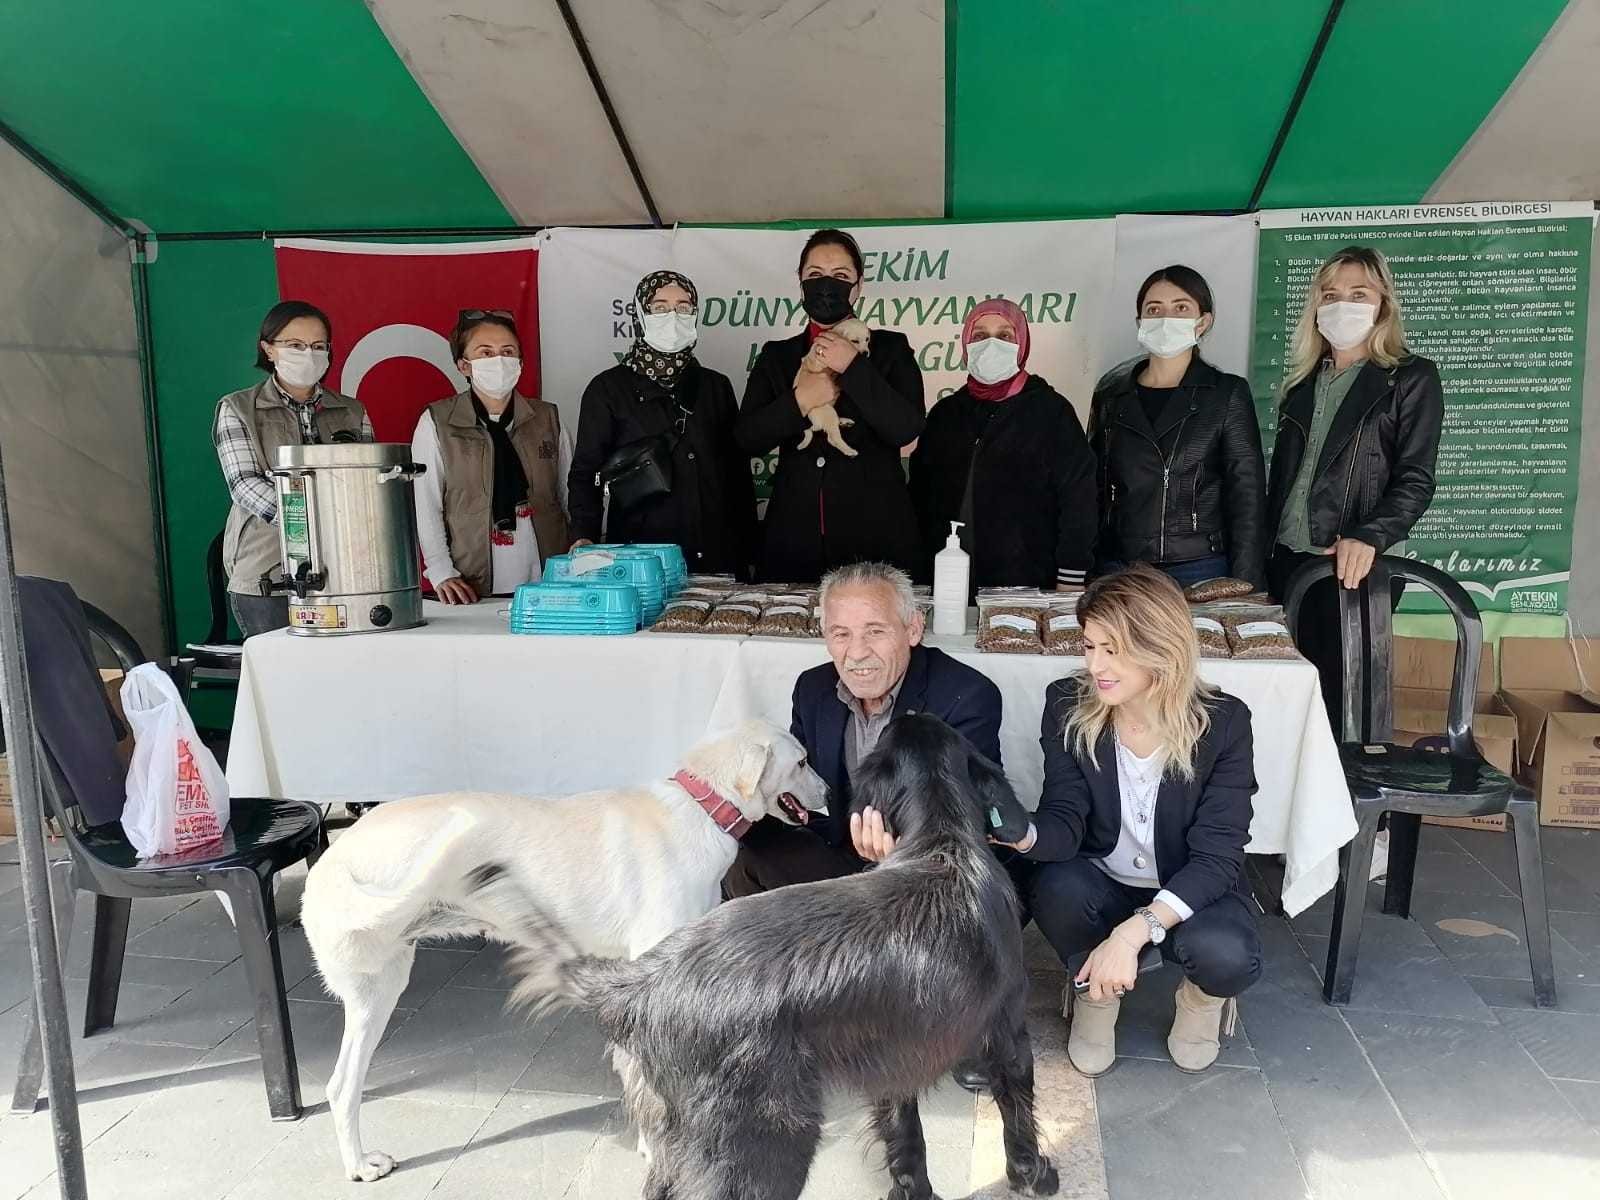 Giresun’da sokak hayvanlarını koruma etkinliği düzenlendi #giresun